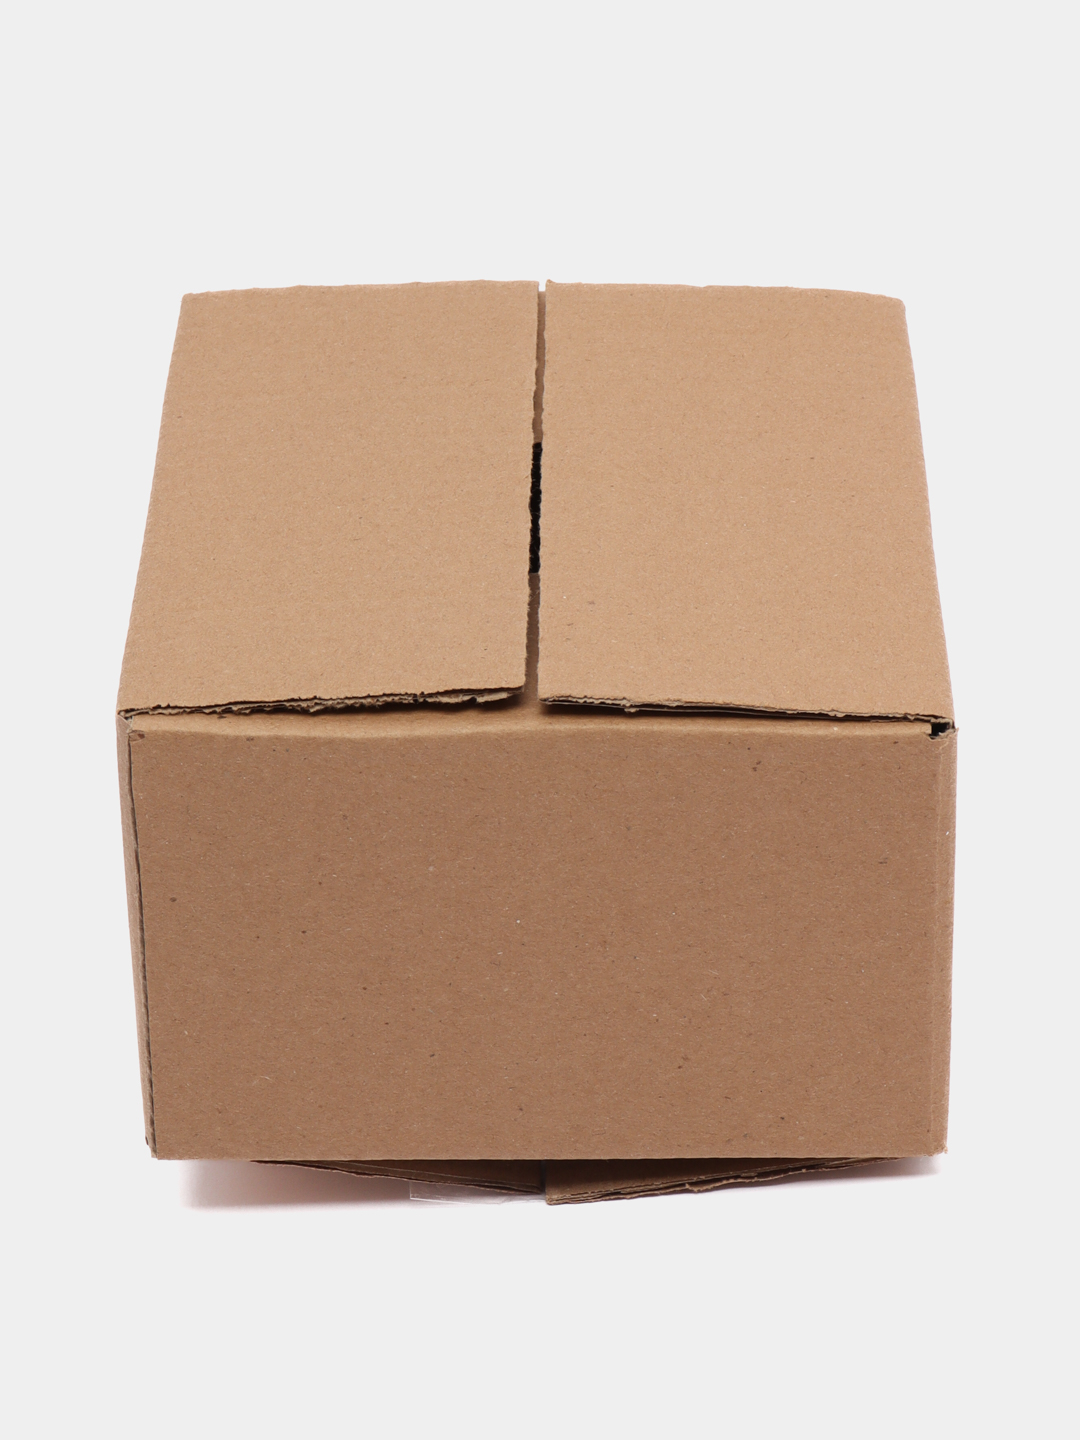 Четырехклапанная подарочная картонная коробка 20*15*9 см подарочная .